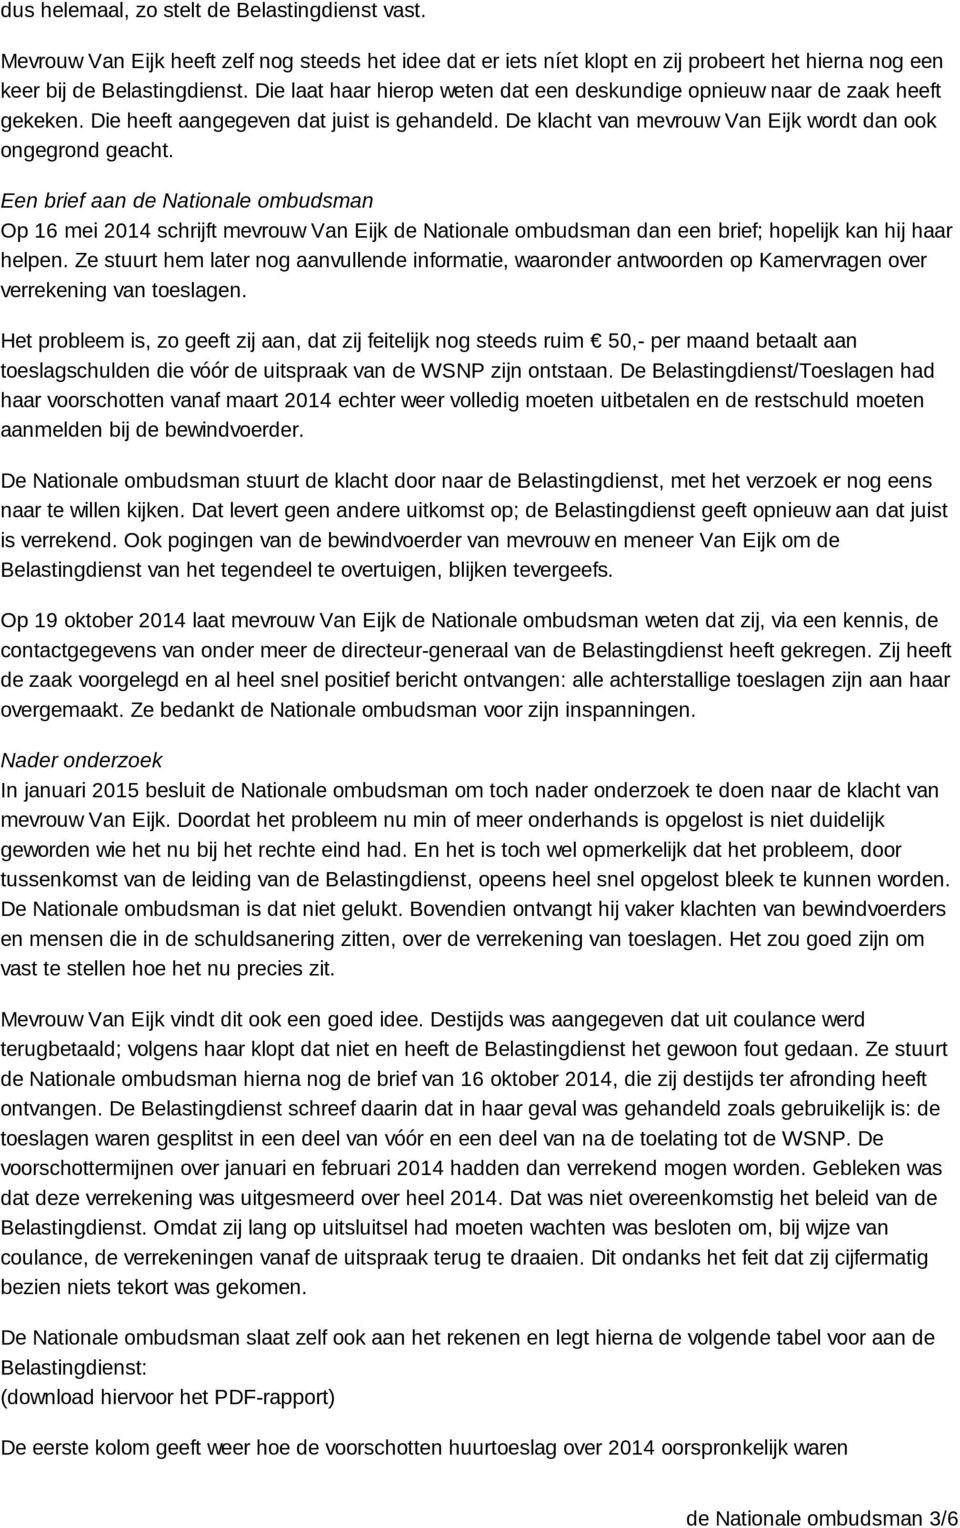 Een brief aan de Nationale ombudsman Op 16 mei 2014 schrijft mevrouw Van Eijk de Nationale ombudsman dan een brief; hopelijk kan hij haar helpen.